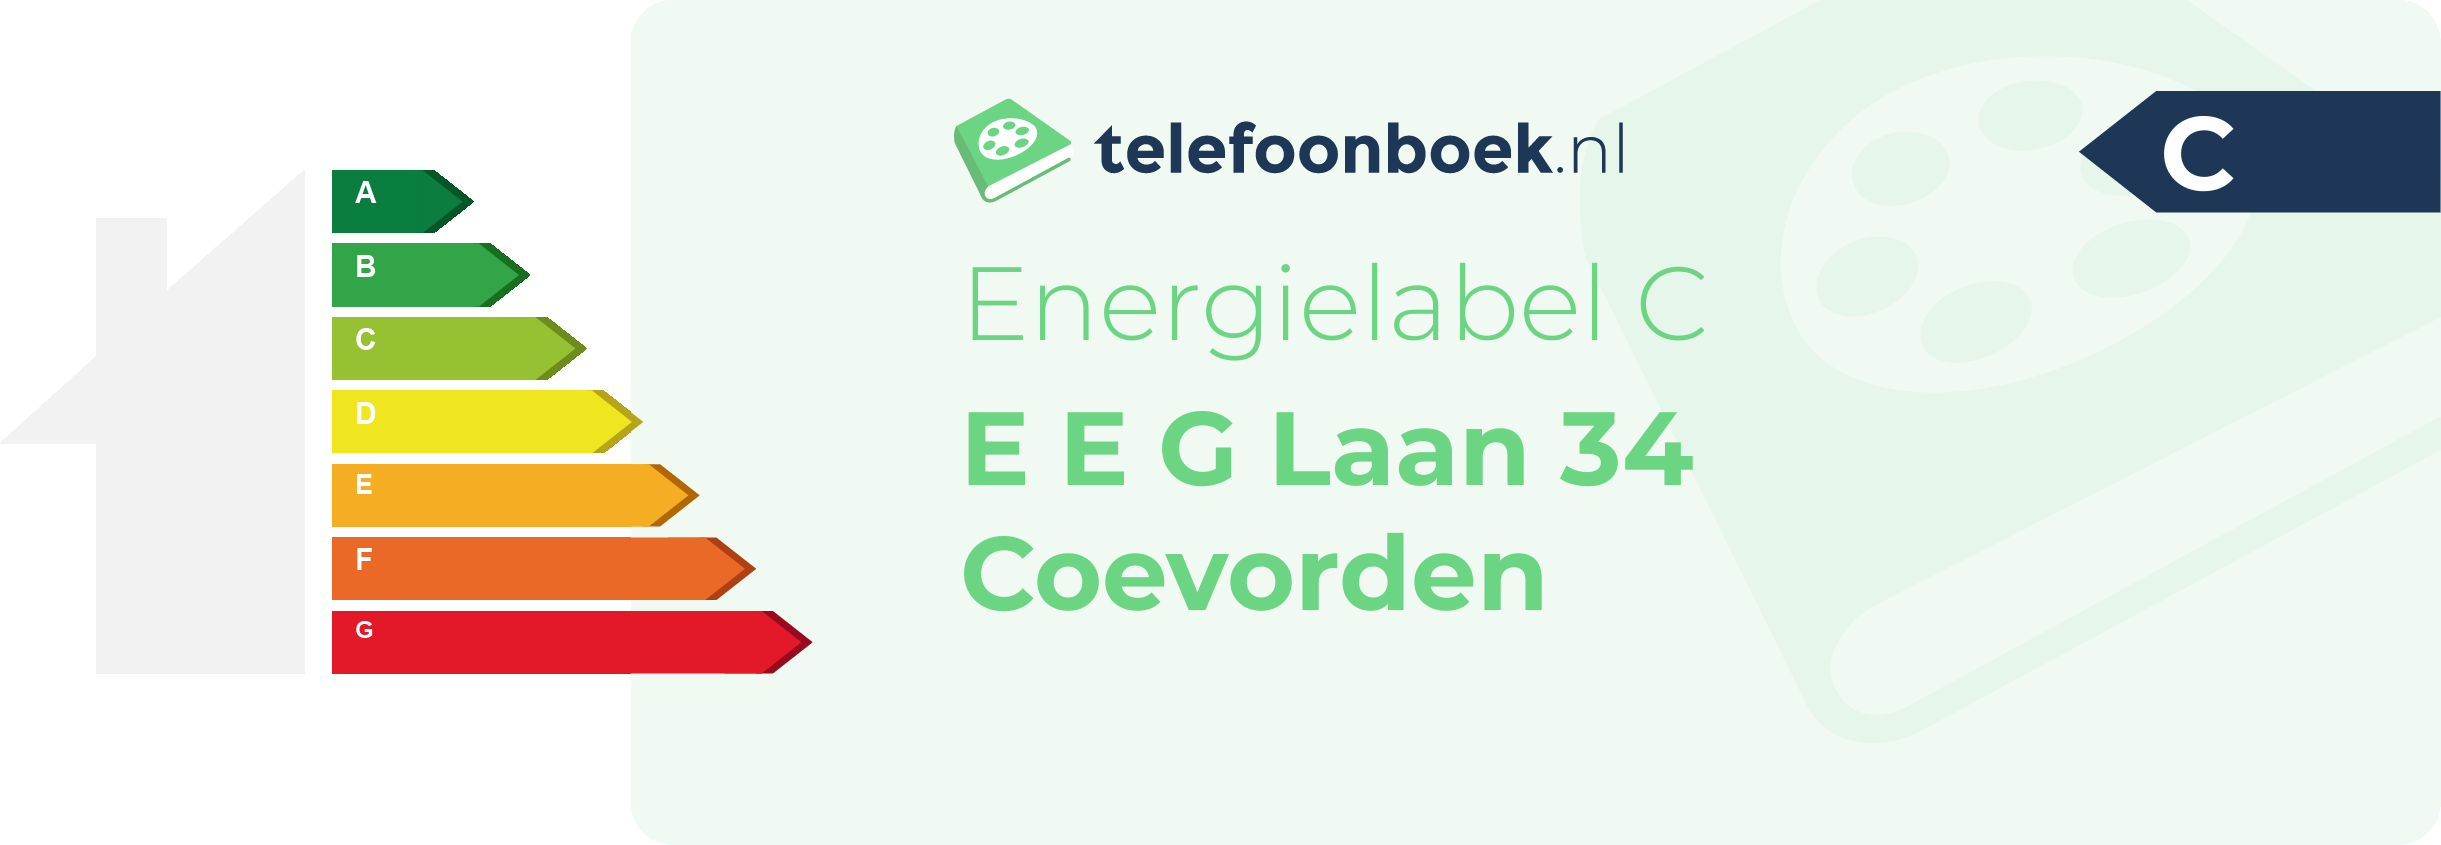 Energielabel E E G Laan 34 Coevorden